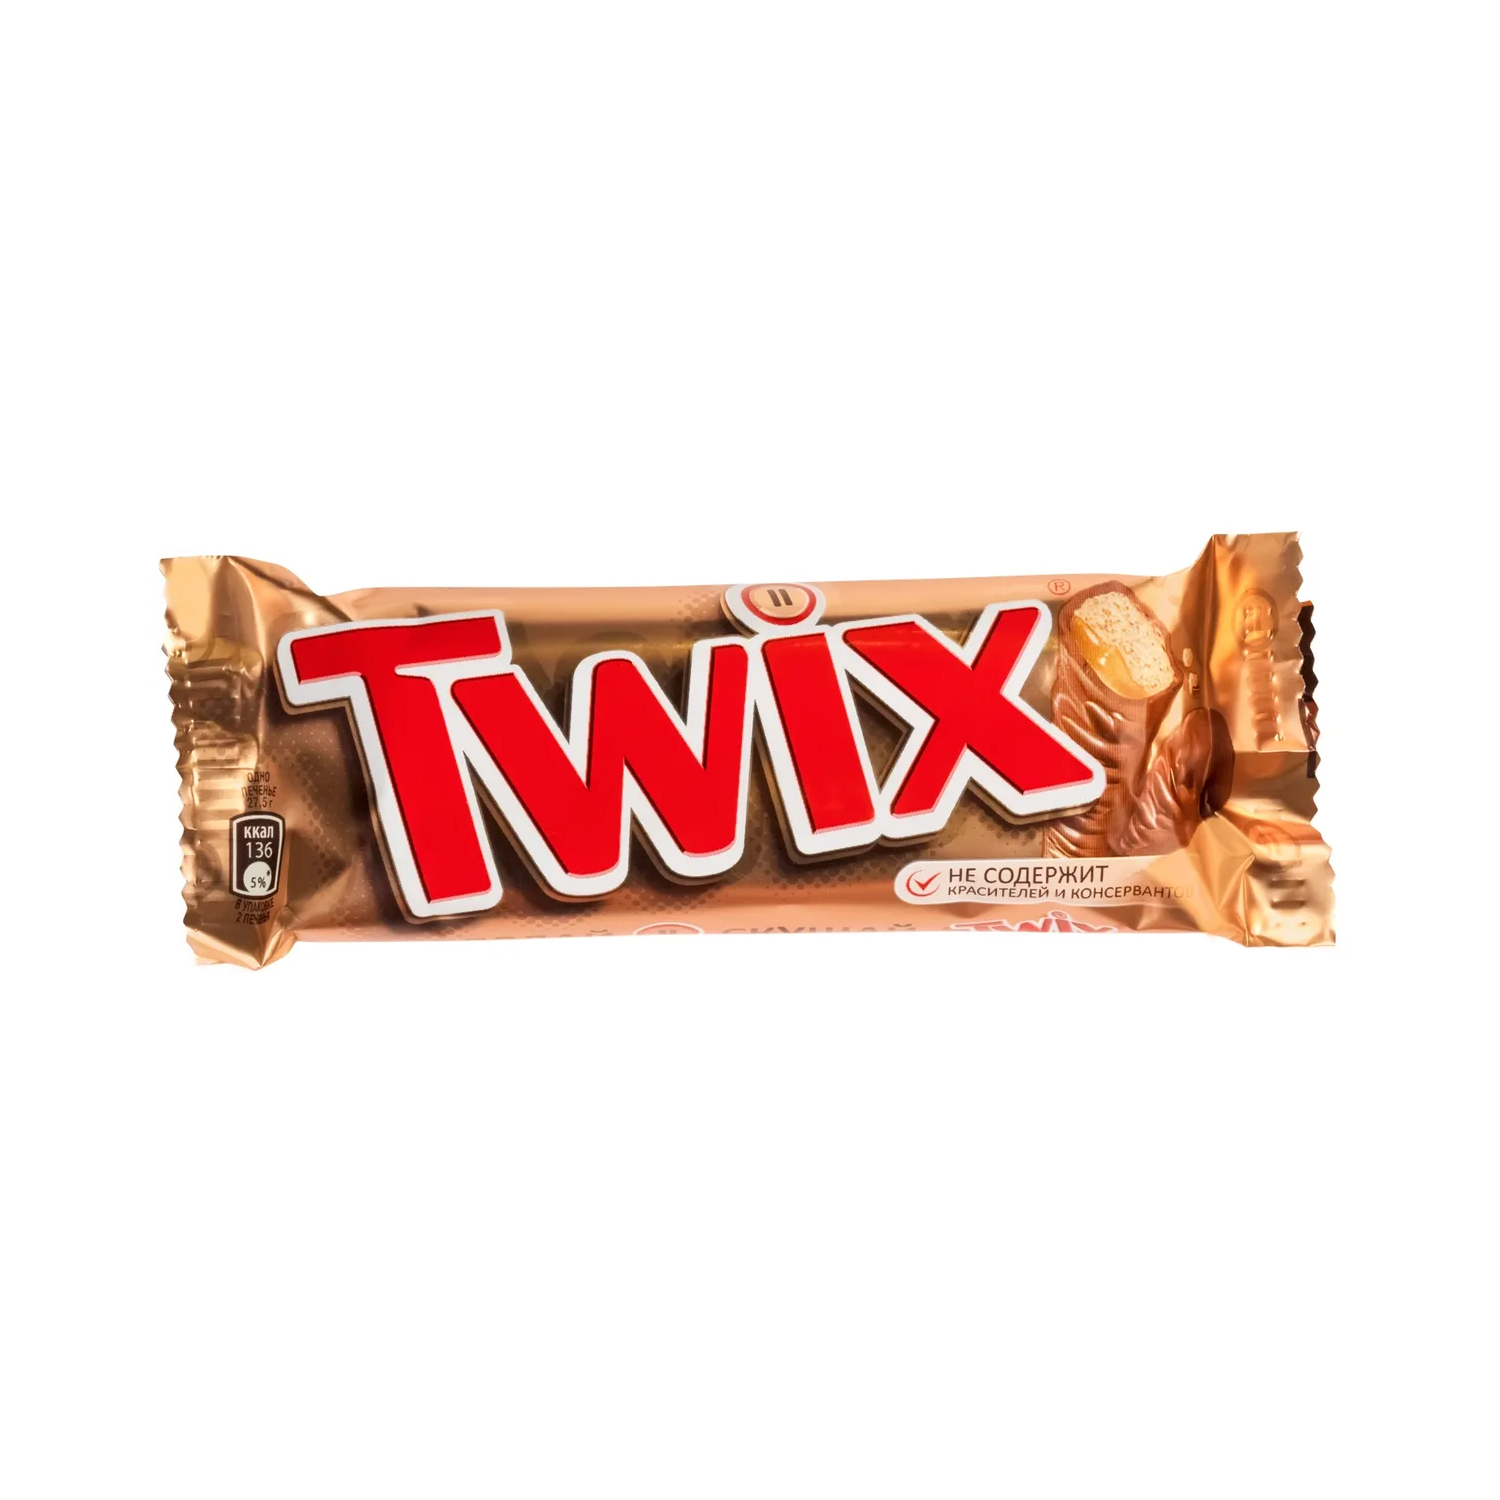 Шоколадный батончик Twix, 55 г шоколадный батончик twix minis 184 г